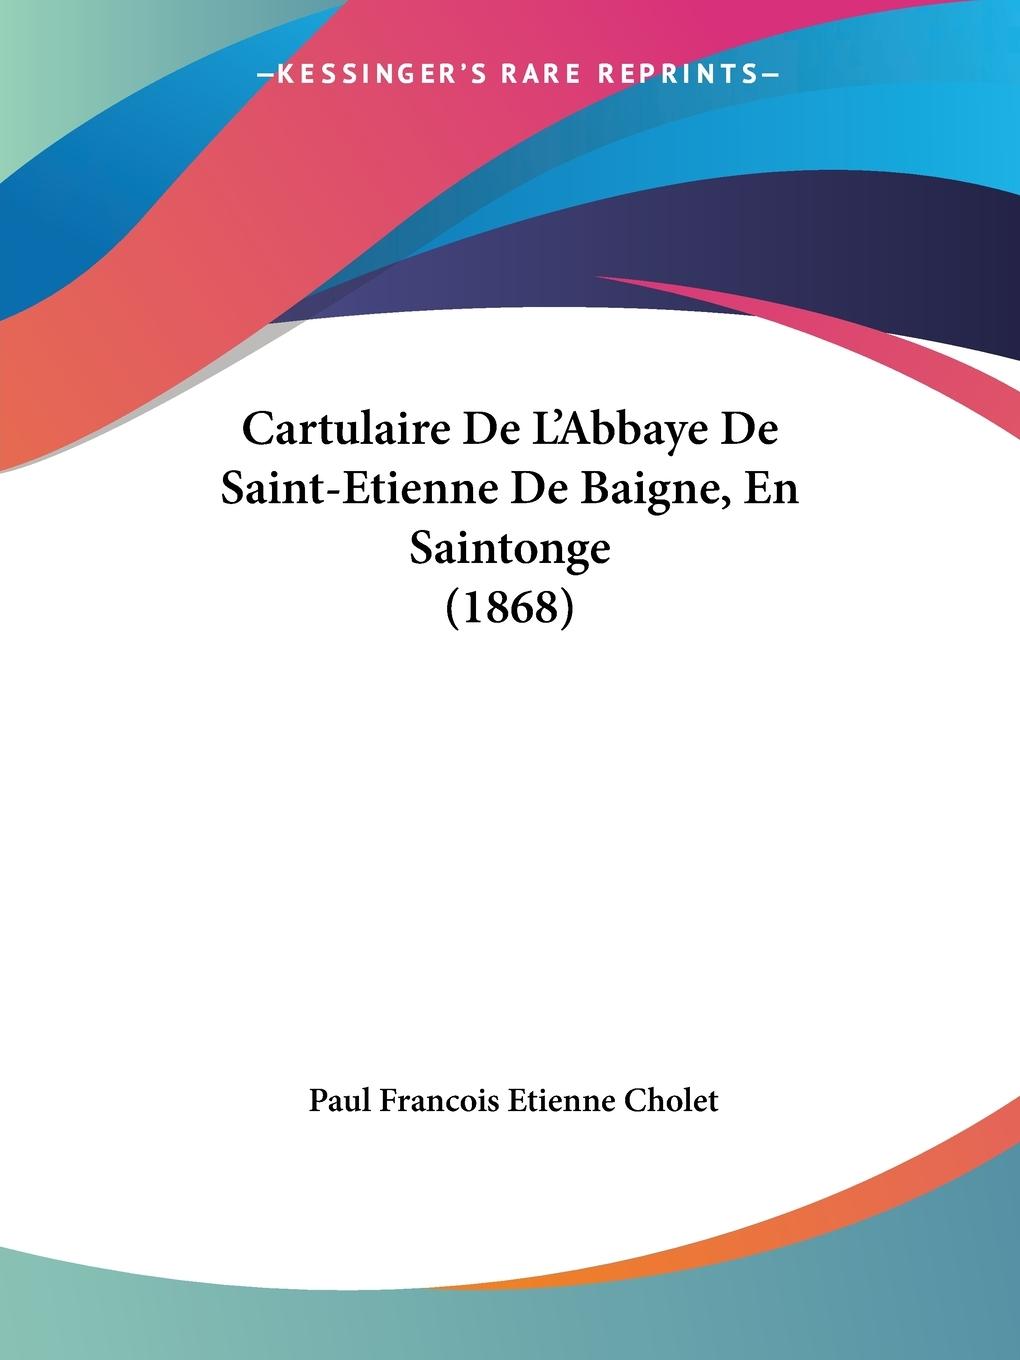 Cartulaire De L Abbaye De Saint-Etienne De Baigne, En Saintonge (1868) - Cholet, Paul Francois Etienne